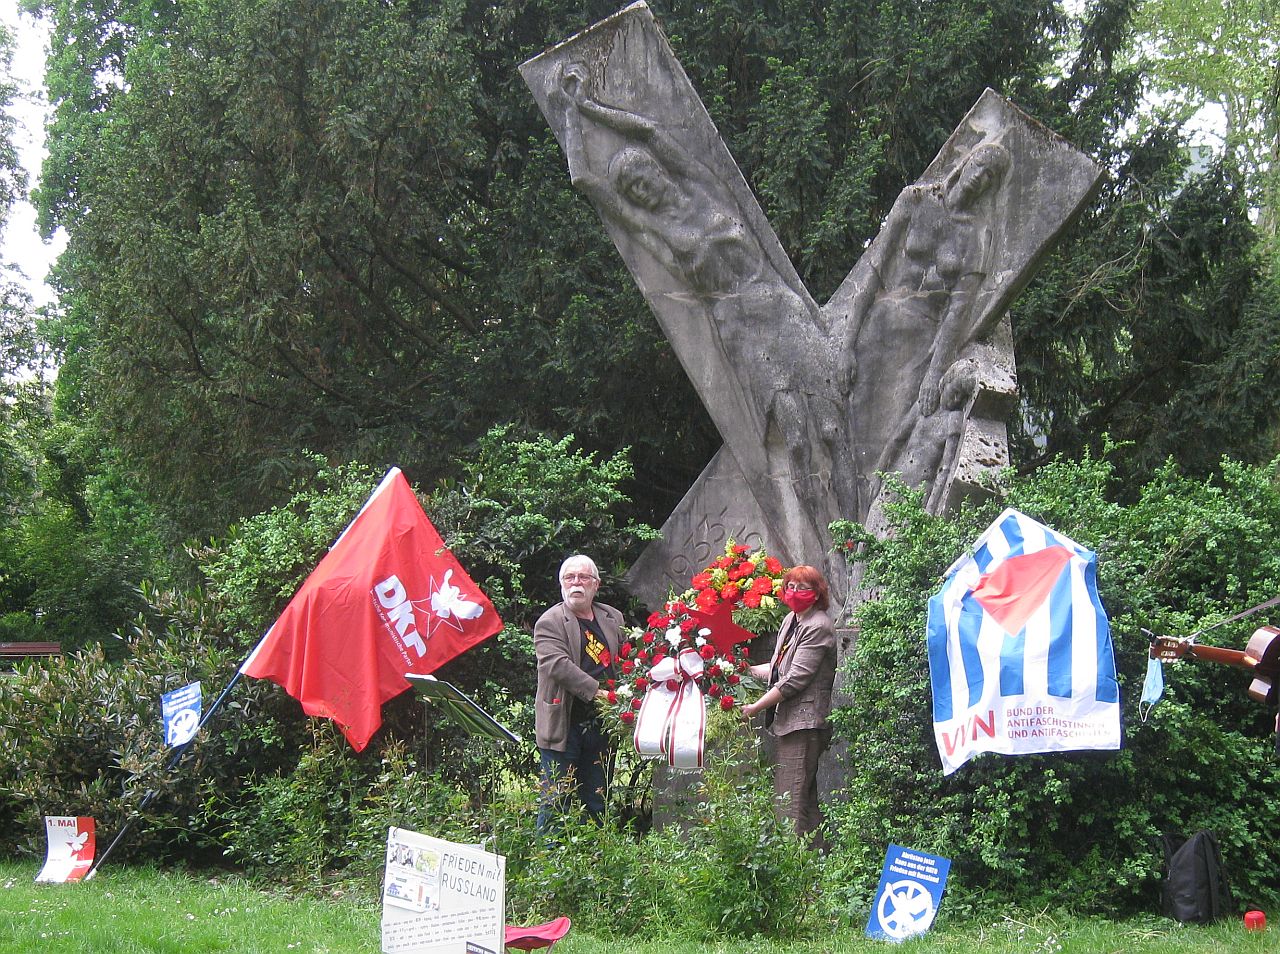 Mainz 1 - Friedensbotschaft - Antifaschismus, Tag der Befreiung - Im Bild